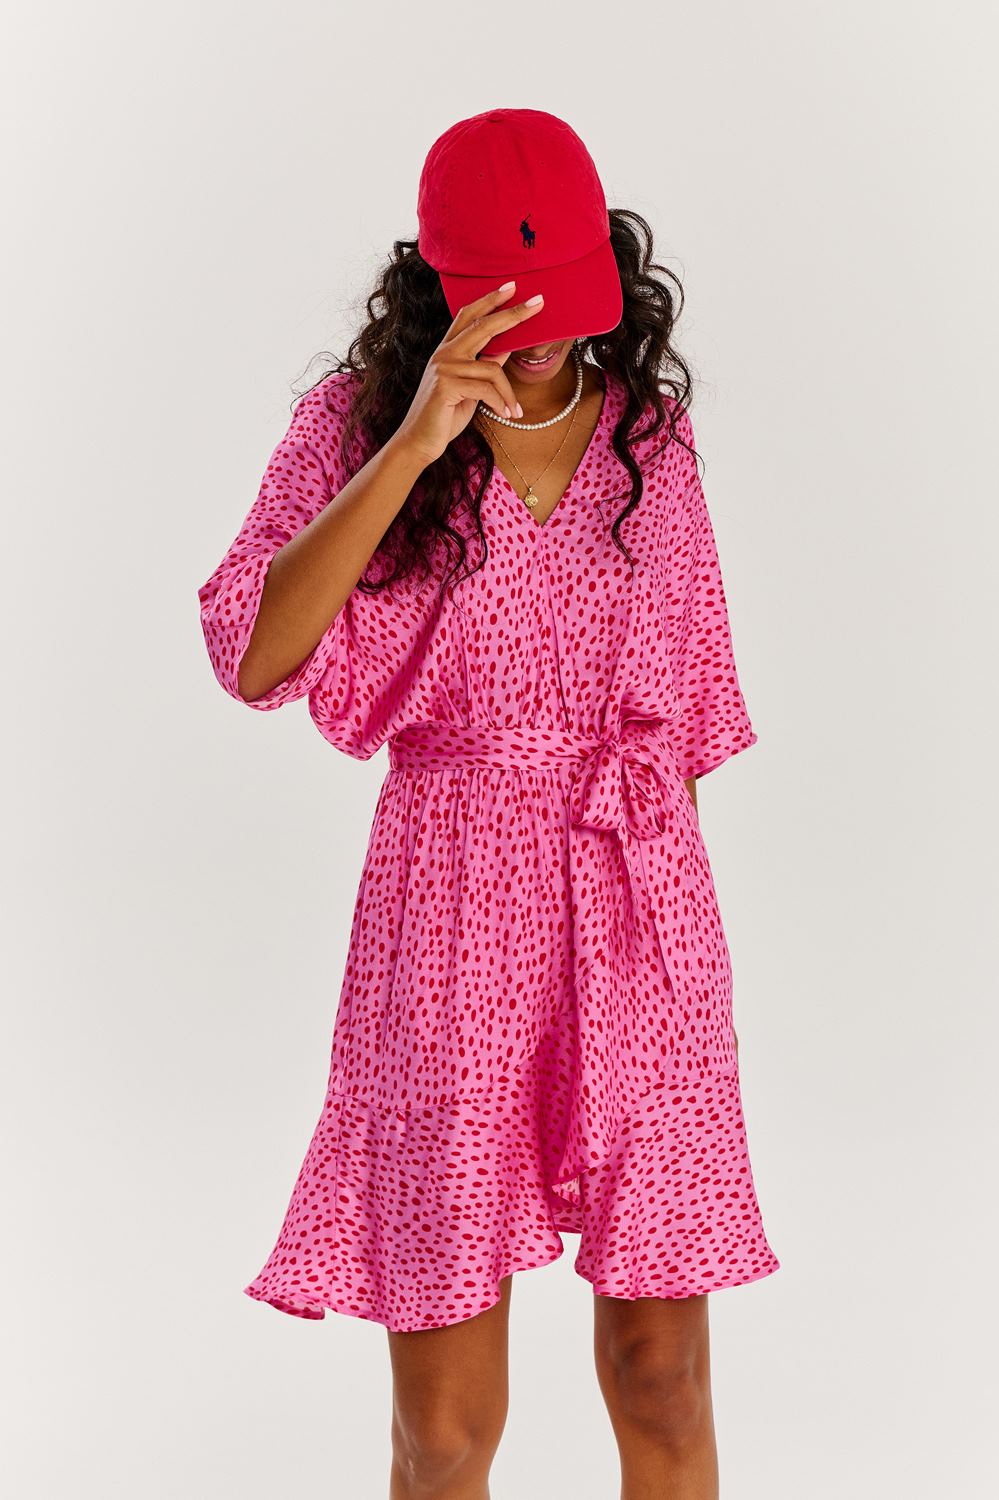 Watermelon Sugar mini dress